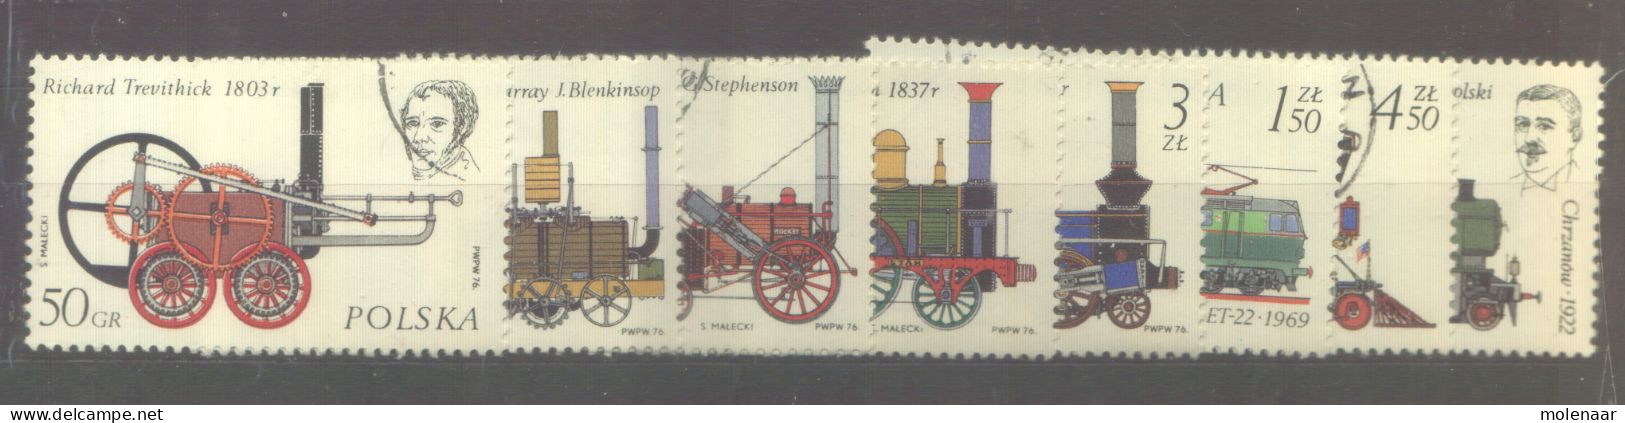 Postzegels > Europa > Polen > 1944-.... Republiek > 1971-80 > Gebruikt No. 2424-2431 (24129) - Used Stamps